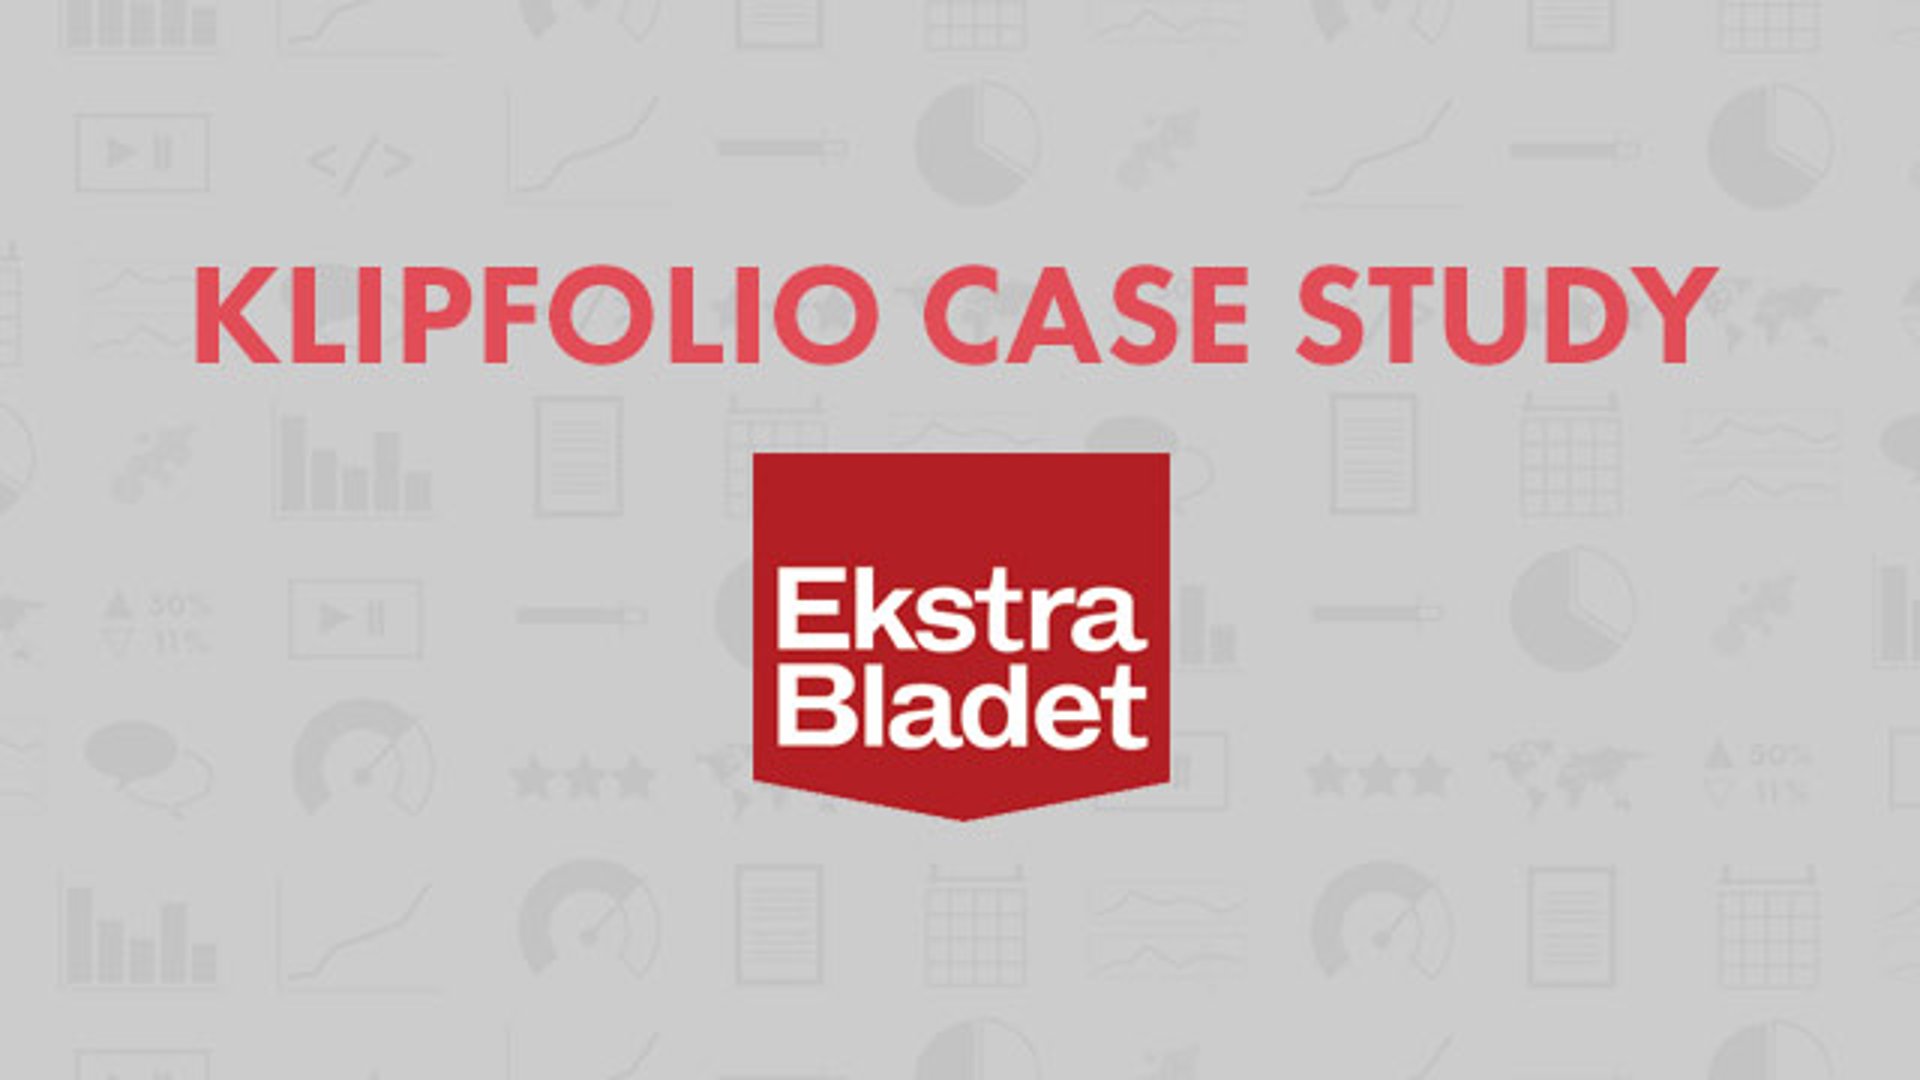 Klipfolio Case Study Ekstra Bladet